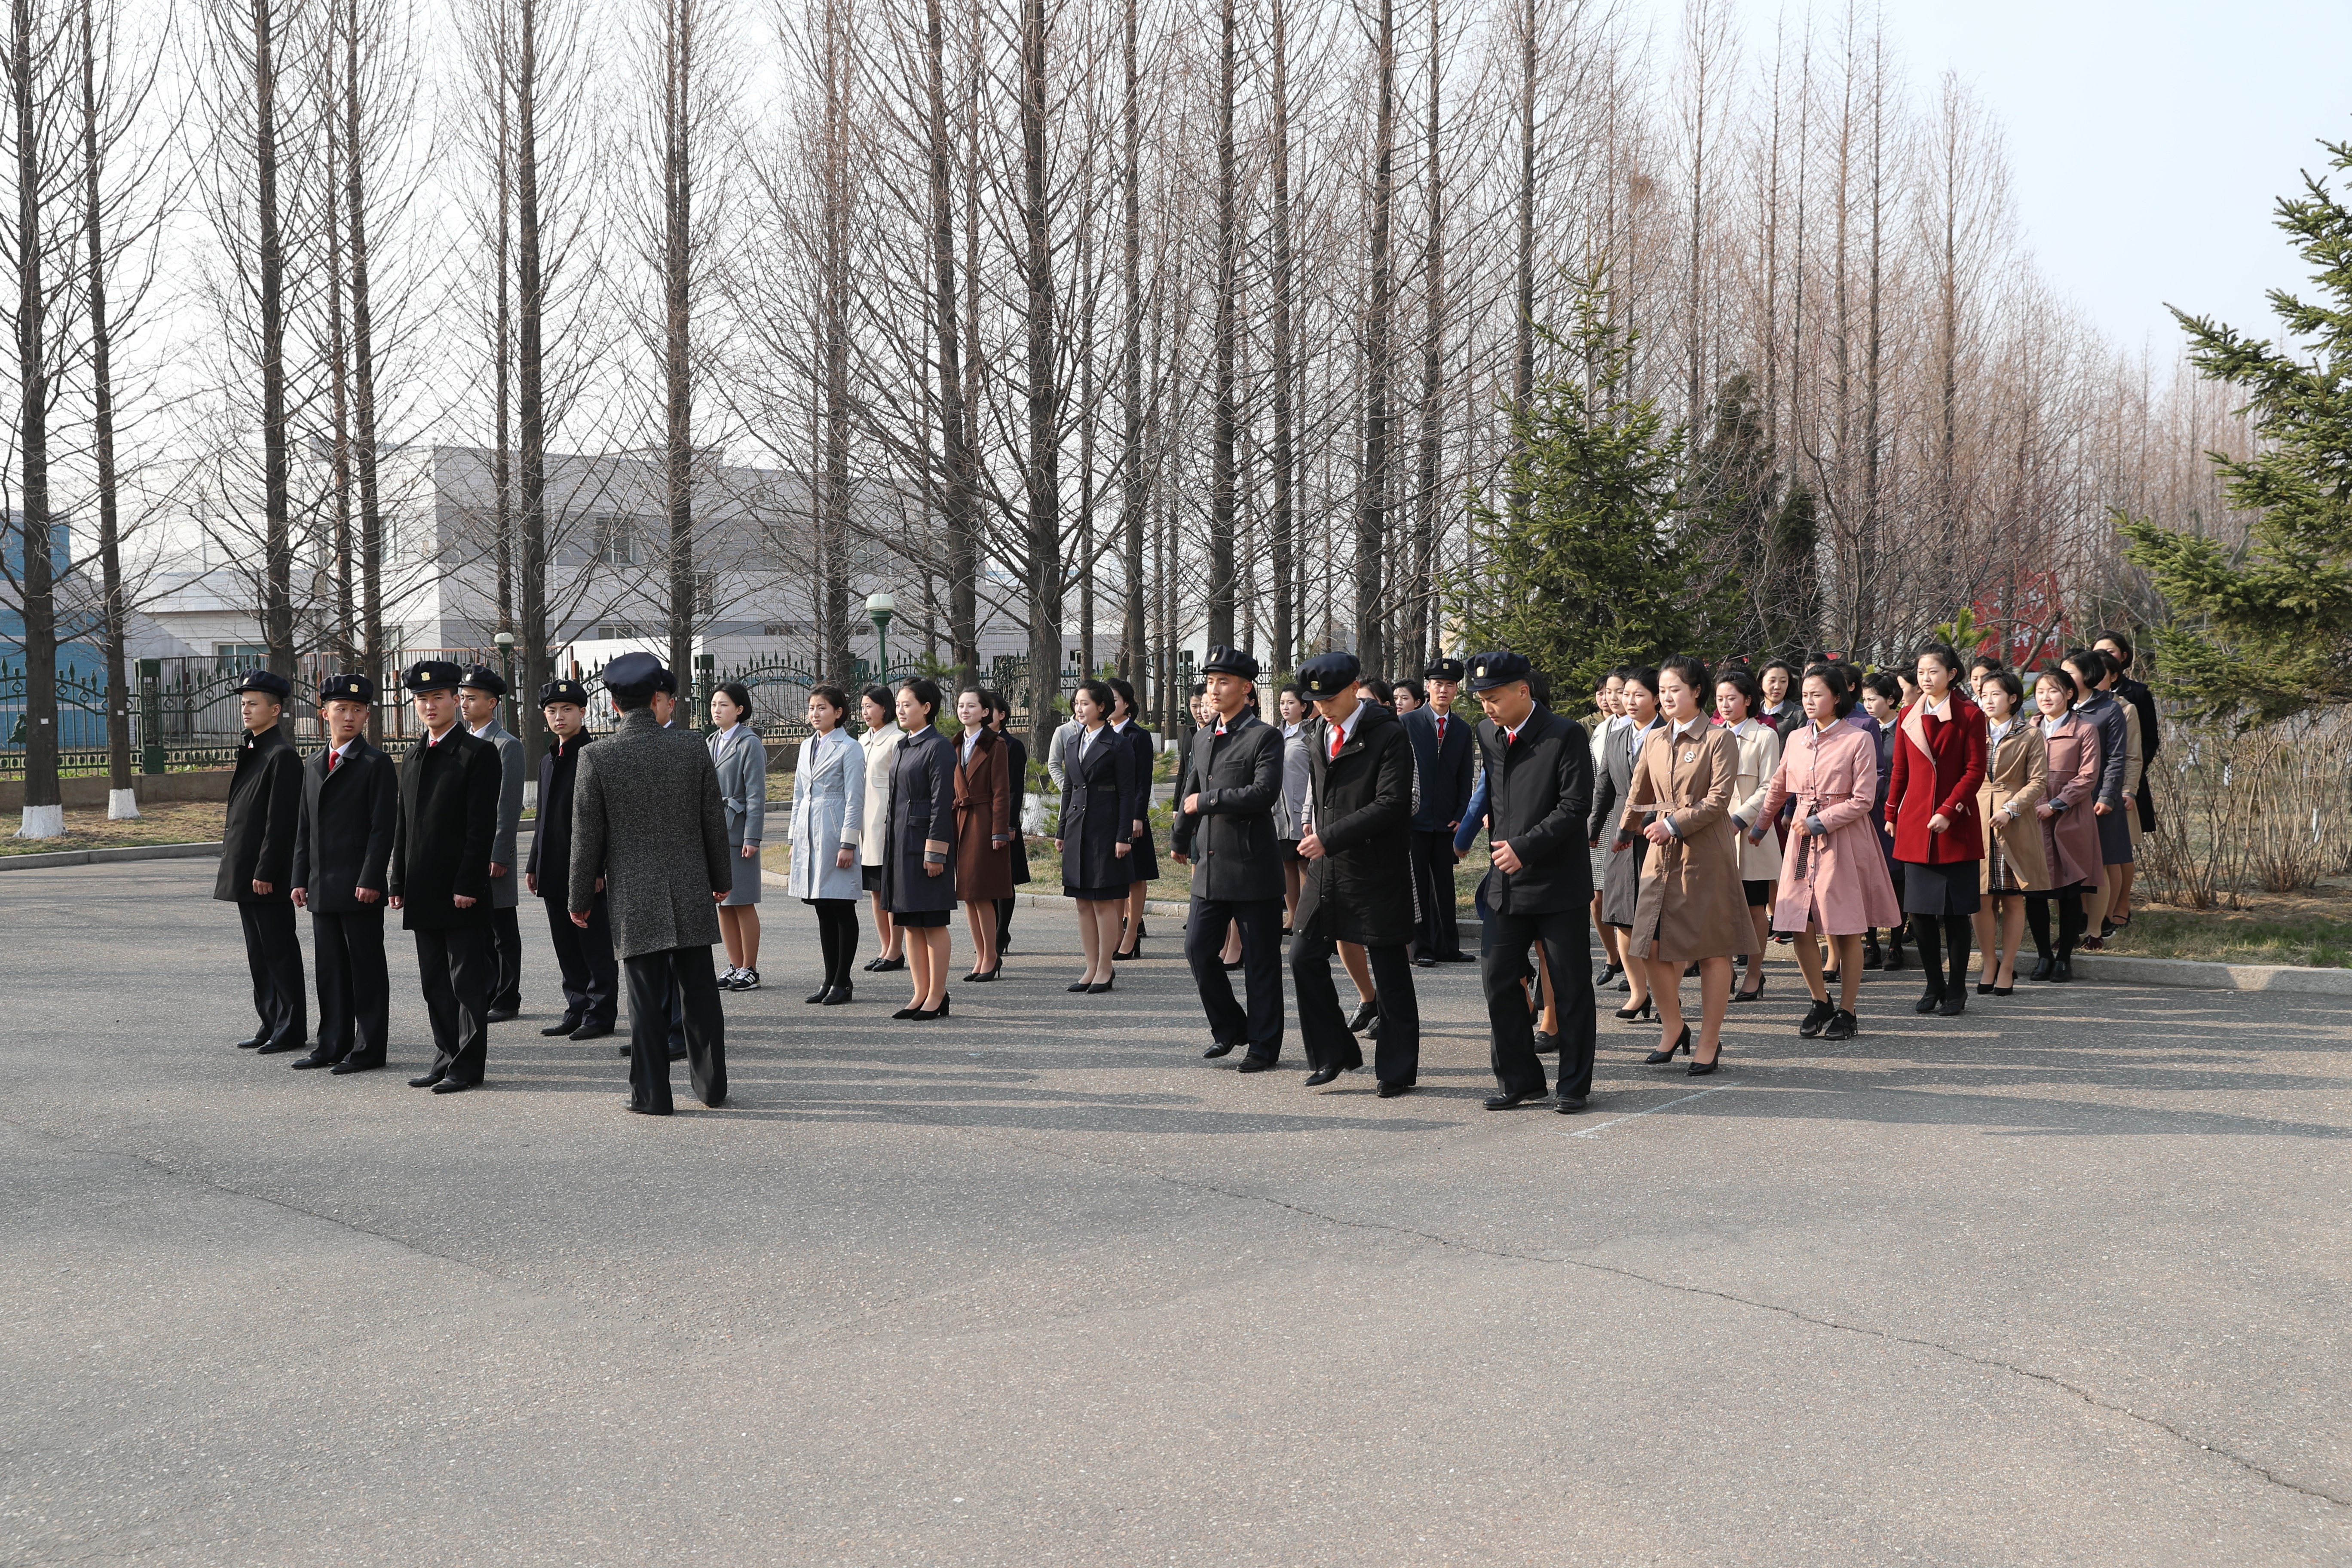 朝鲜大学校服图片